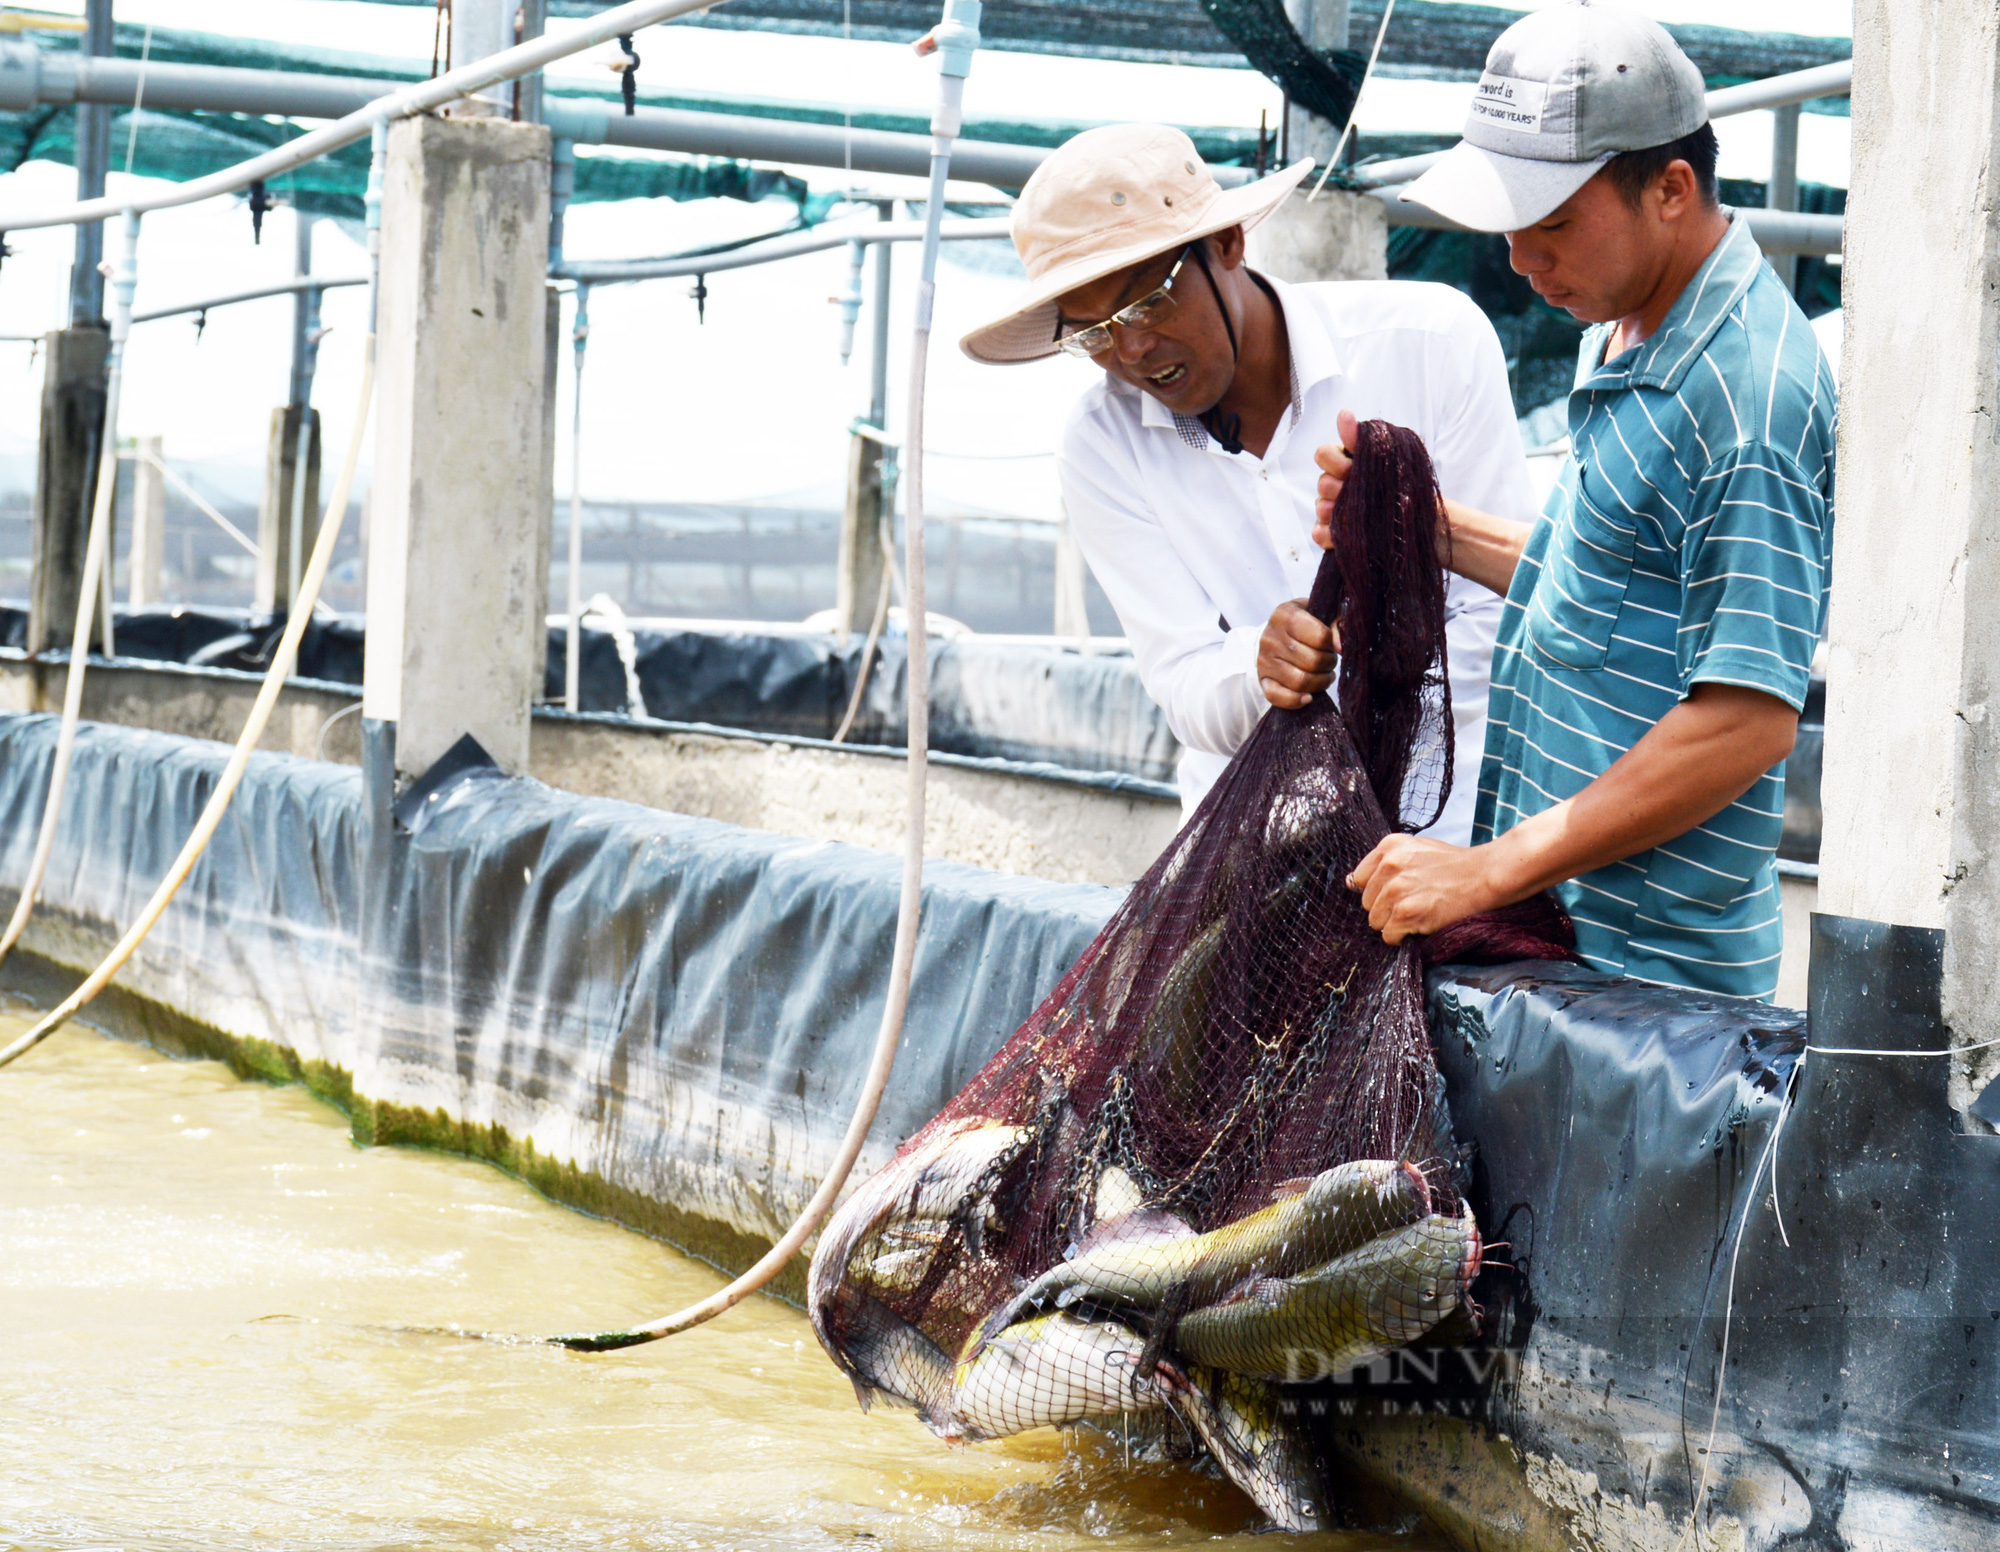 Một nông dân ở Bạc Liêu tặng 10 tấn cá đặc sản cho bà con khu cách ly, phong tỏa - Ảnh 2.